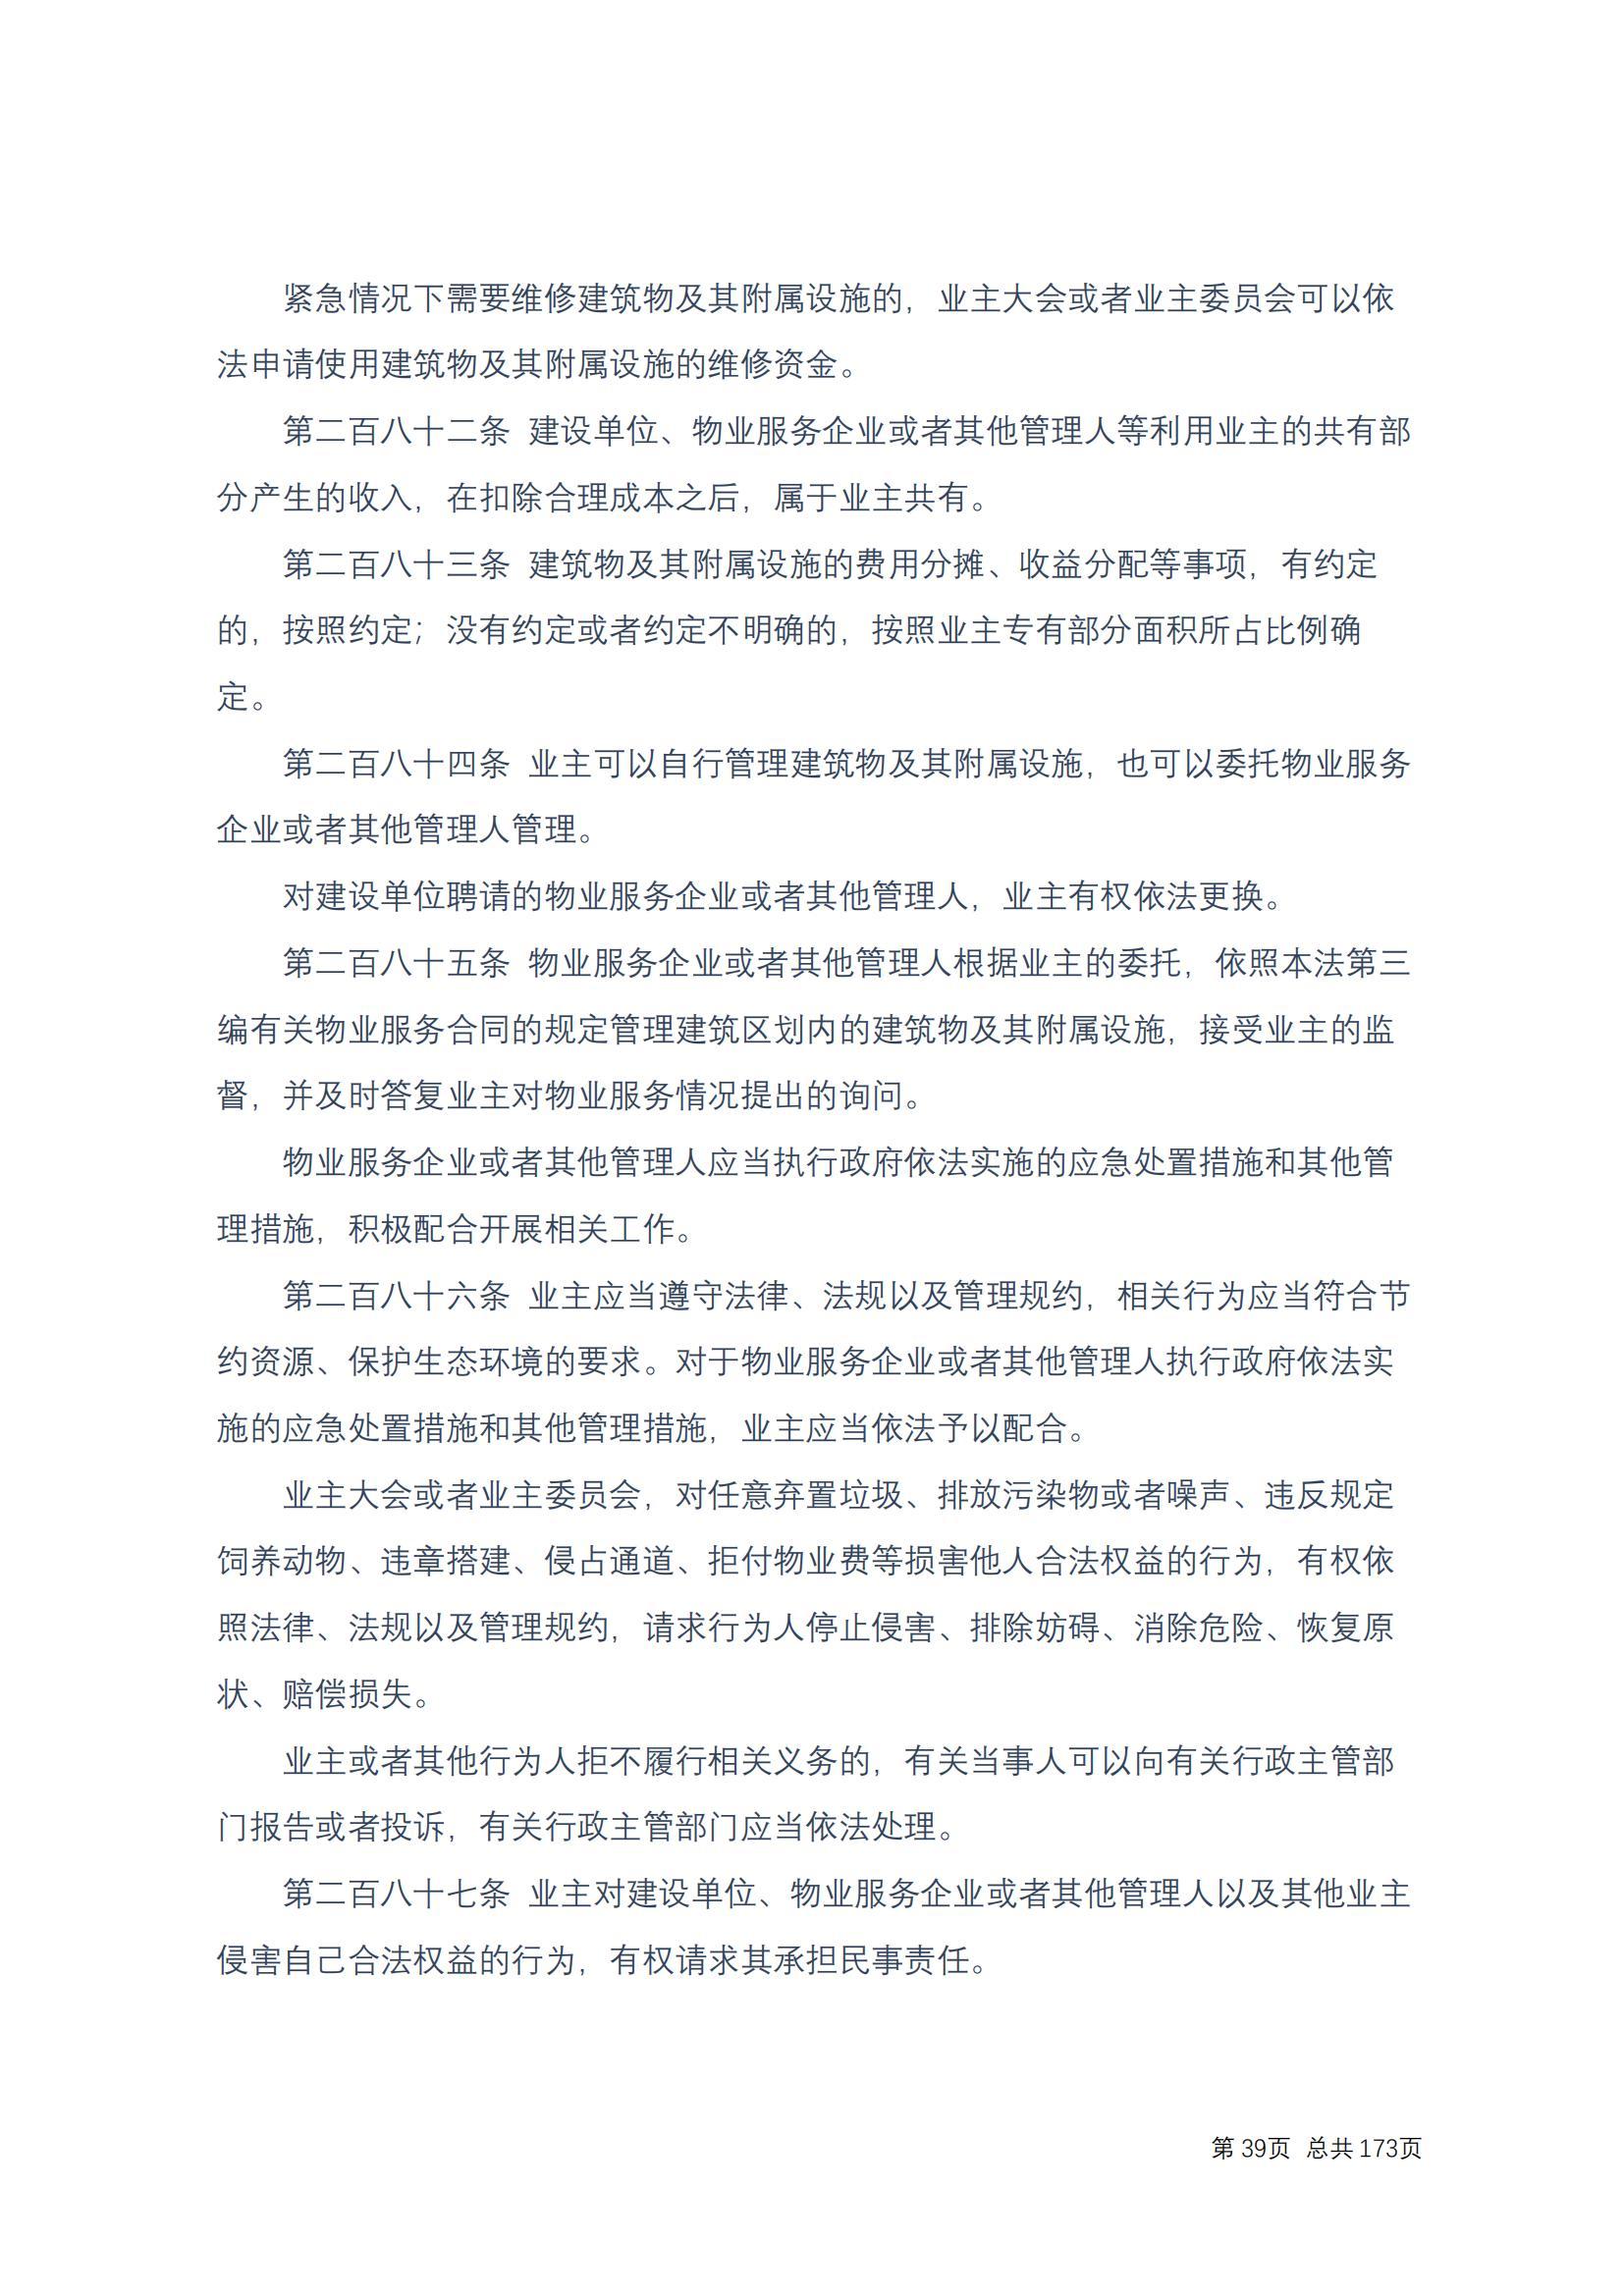 中华人民共和国民法典 修改过_38